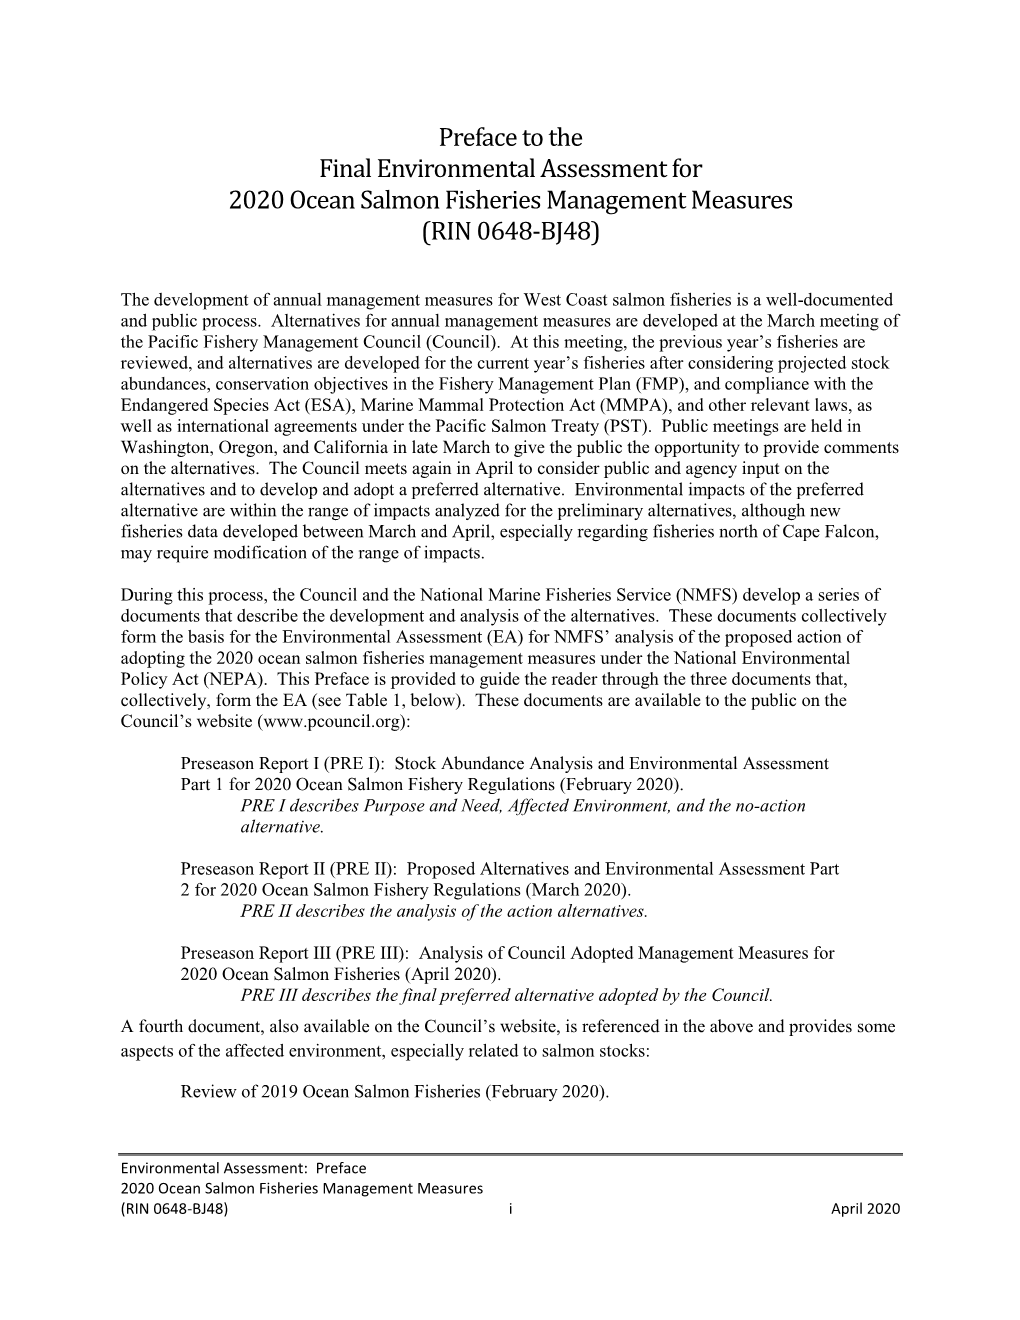 Environmental Assessment for 2020 Ocean Salmon Management